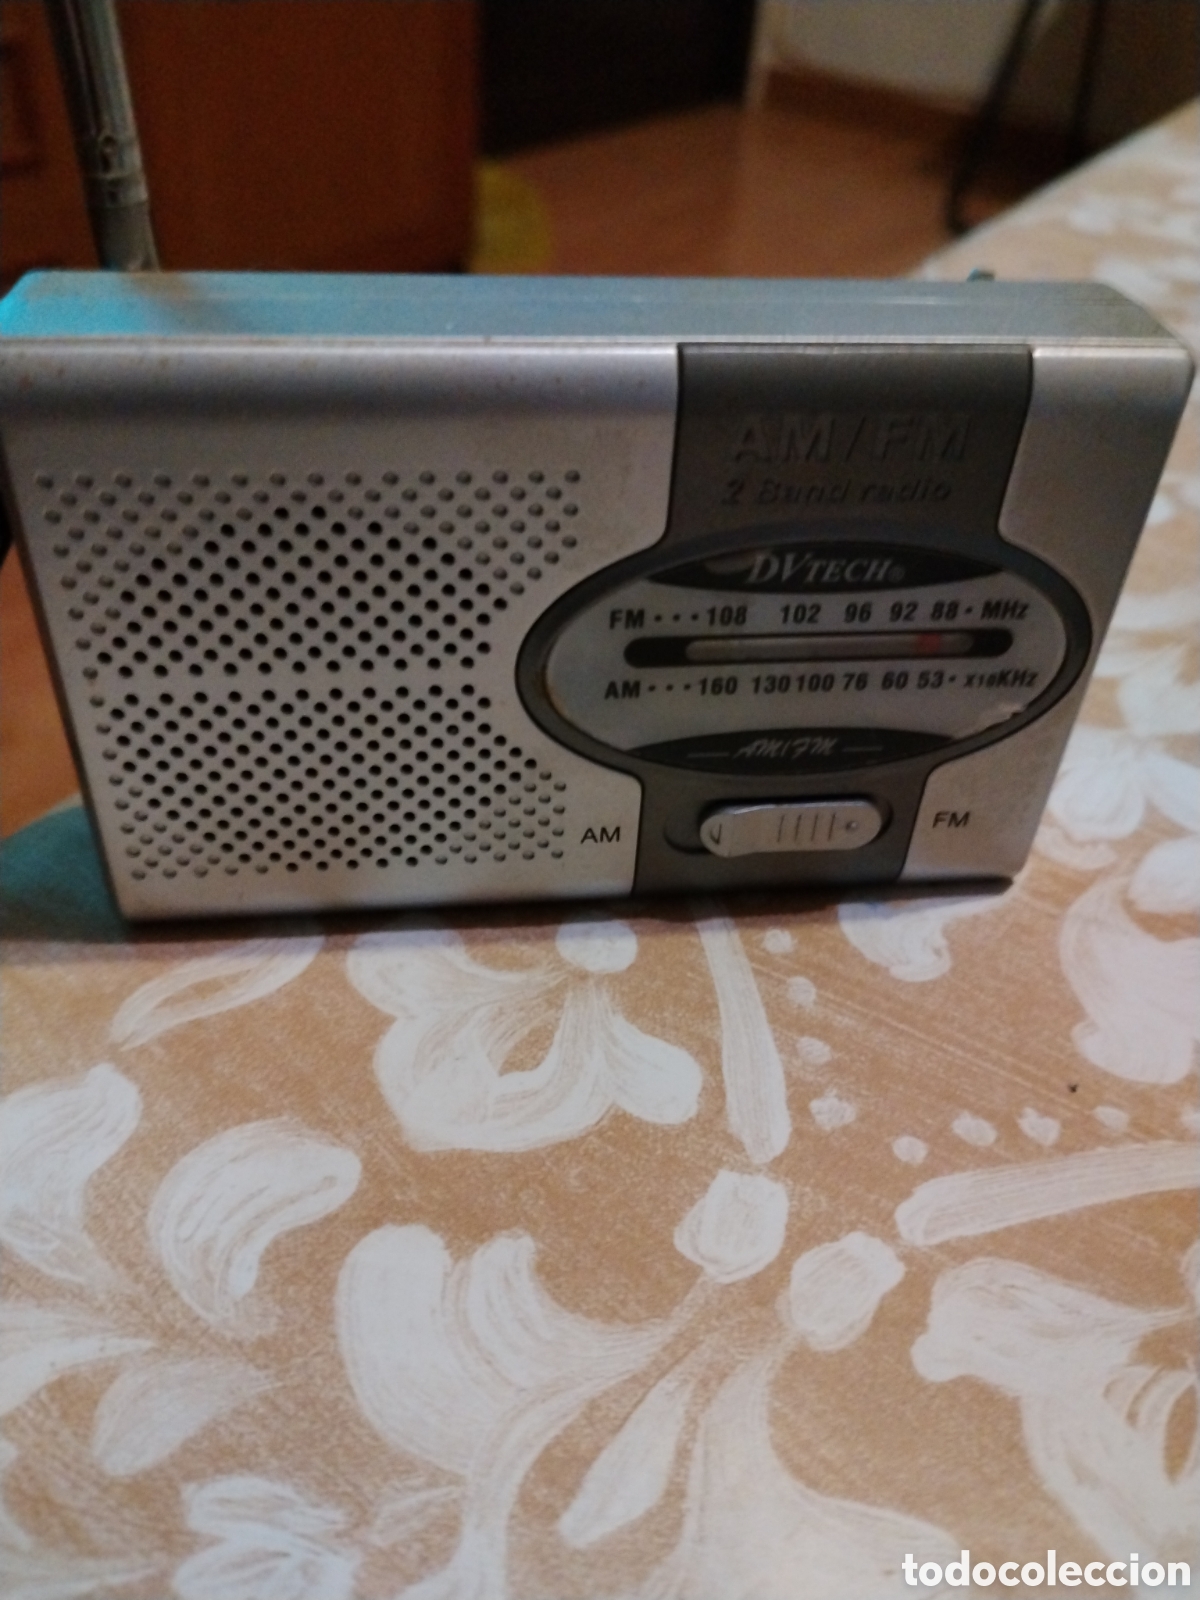 pequeña radio marca dv tech, am/fm - Compra venta en todocoleccion